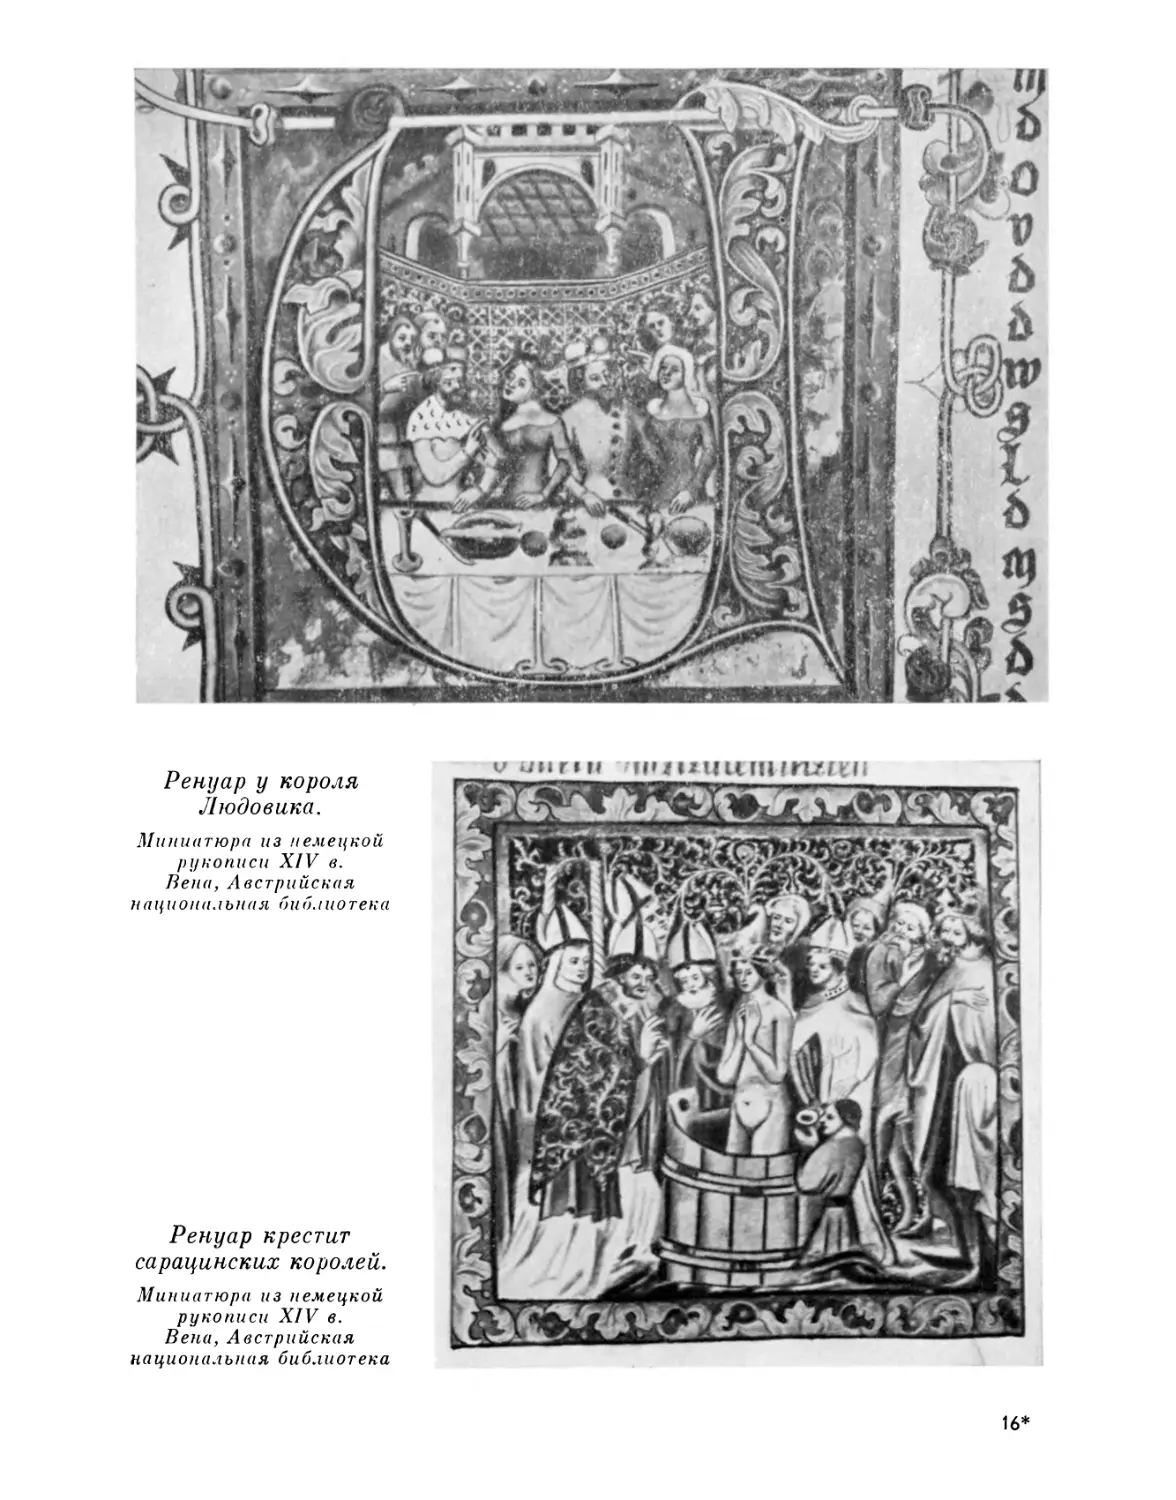 Ренуар у короля Людовика; Ренуар крестит сарацинских королей